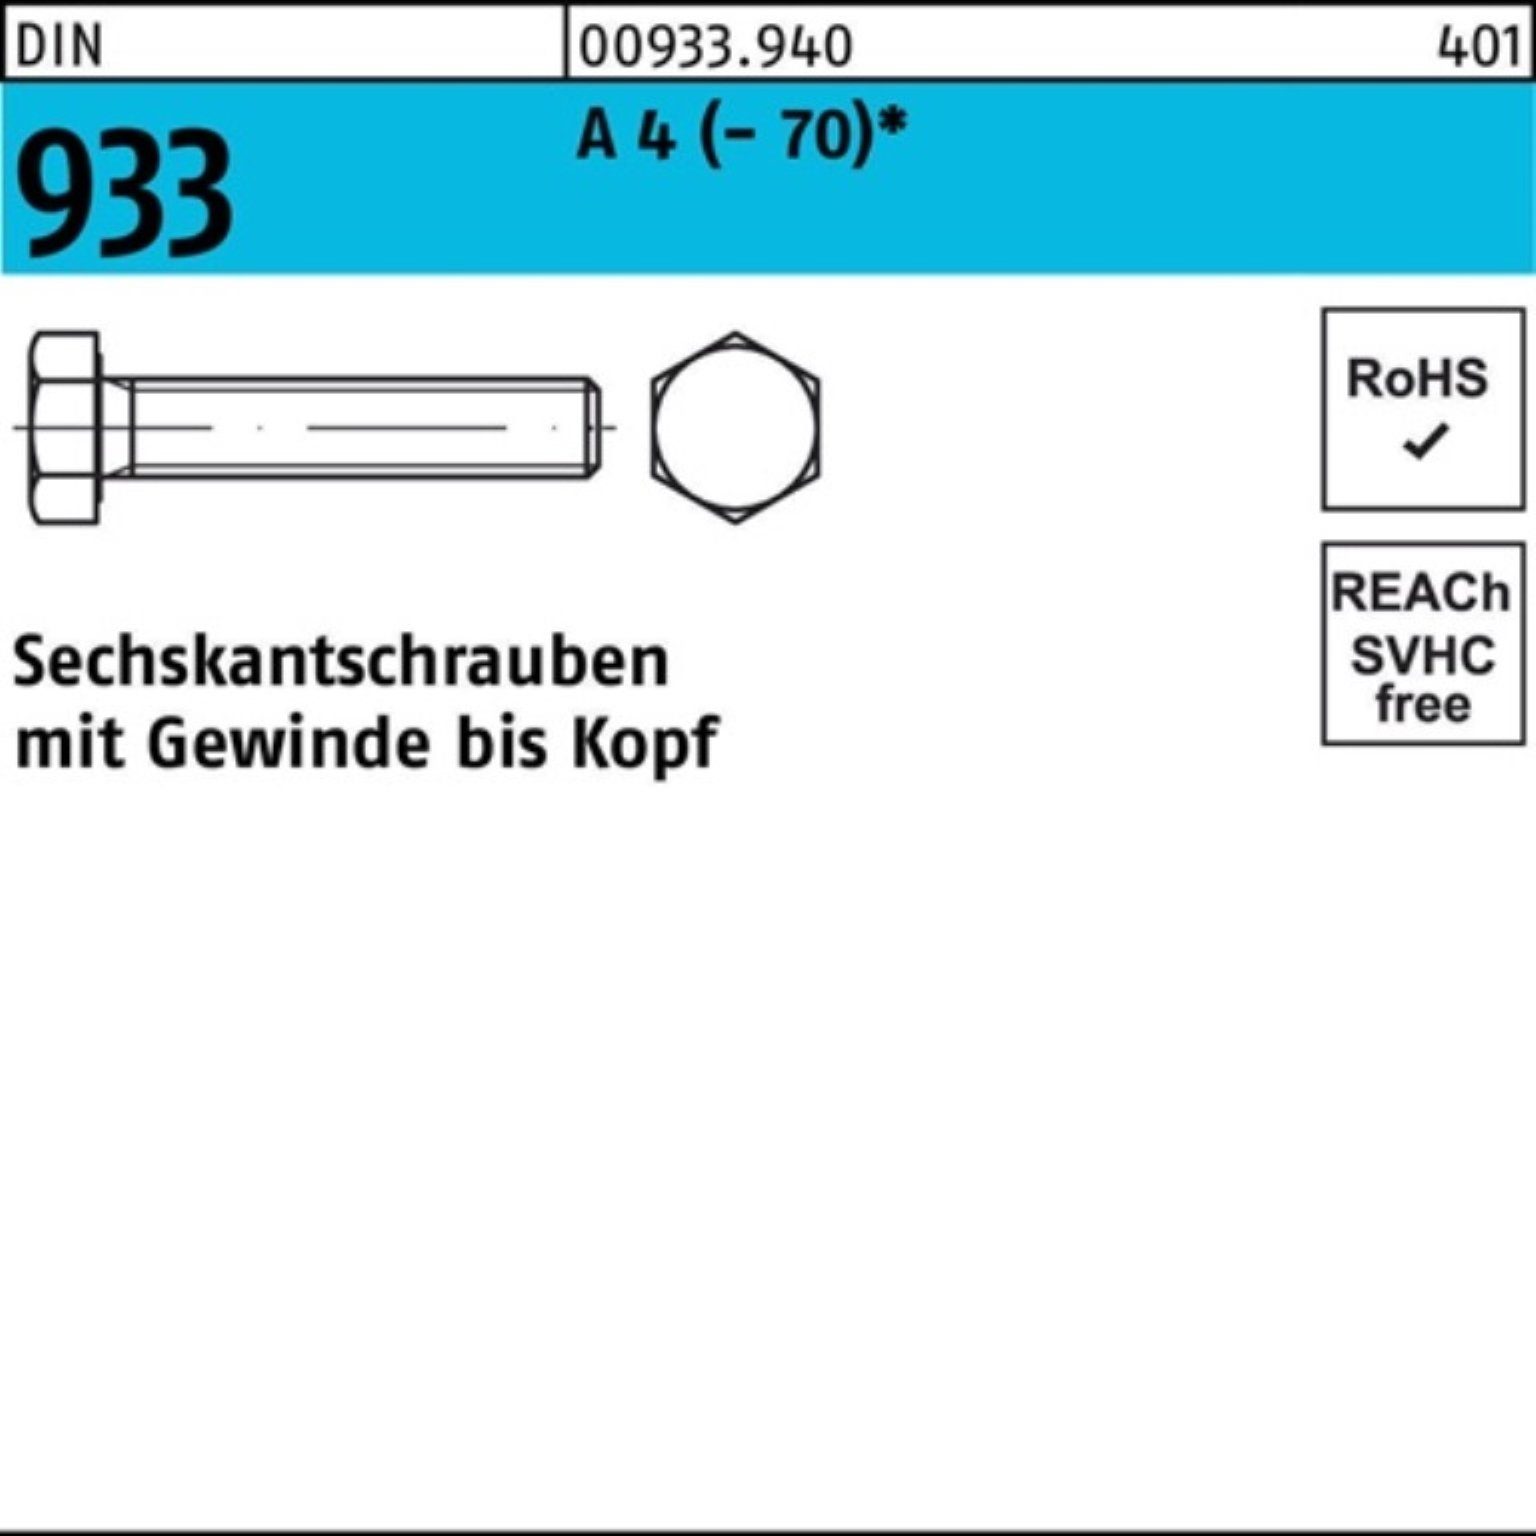 Reyher Sechskantschraube 4 70 Sechskantschraube 100 D VG DIN 100er 933 M5x Pack A Stück (70)